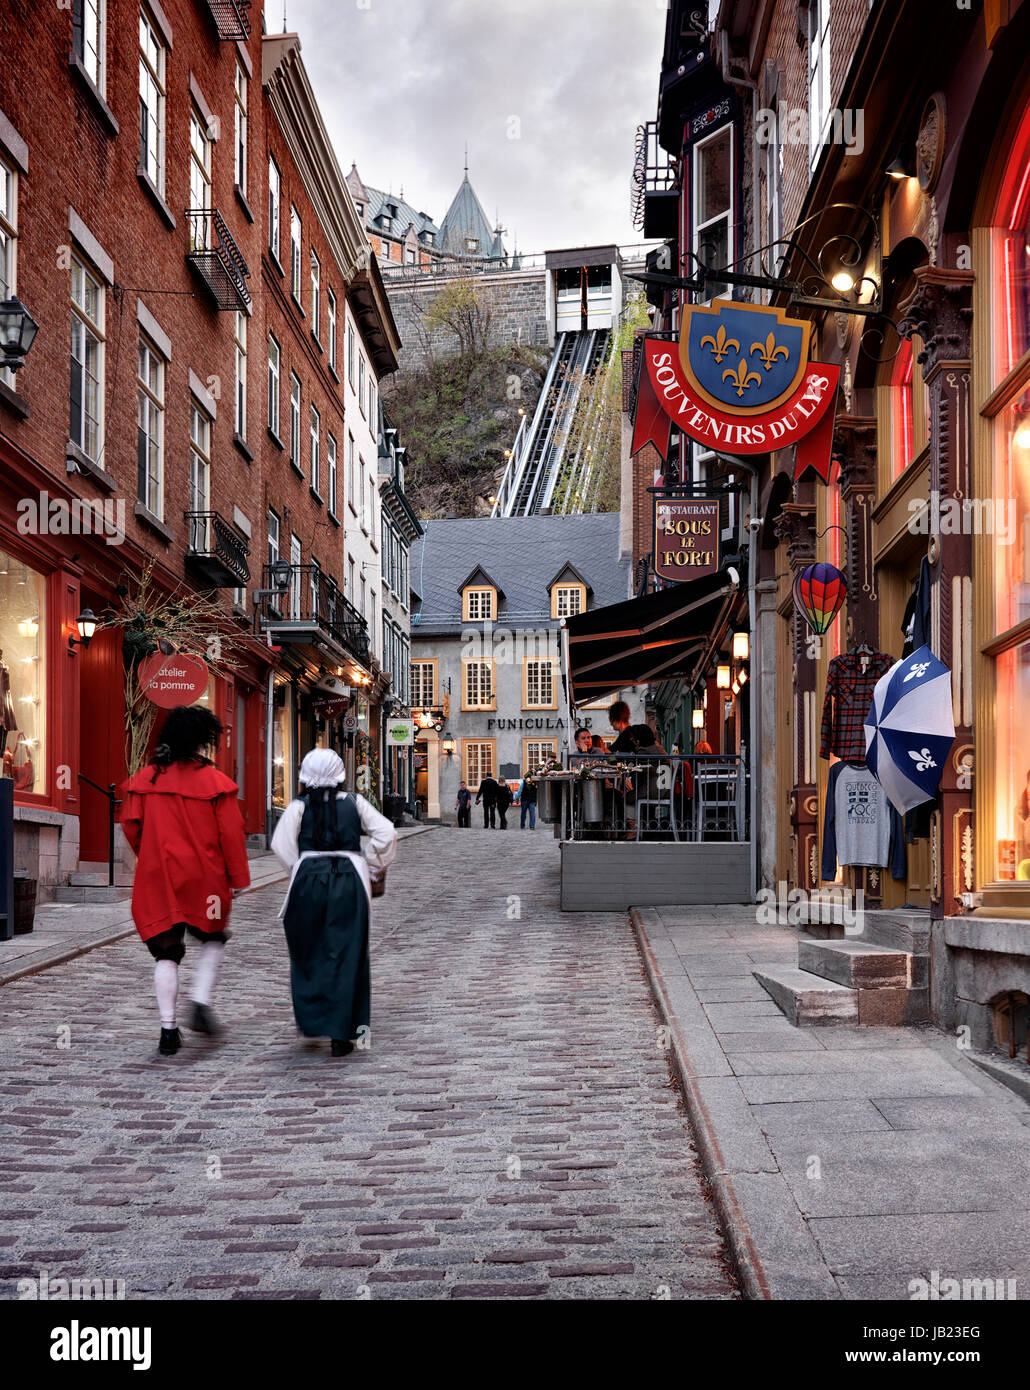 Führerschein erhältlich unter MaximImages.com - zwei Personen in mittelalterlichen Kostümen auf der Rue Sous Le Fort Street in der Altstadt von Québec mit Seilbahn in der Stockfoto